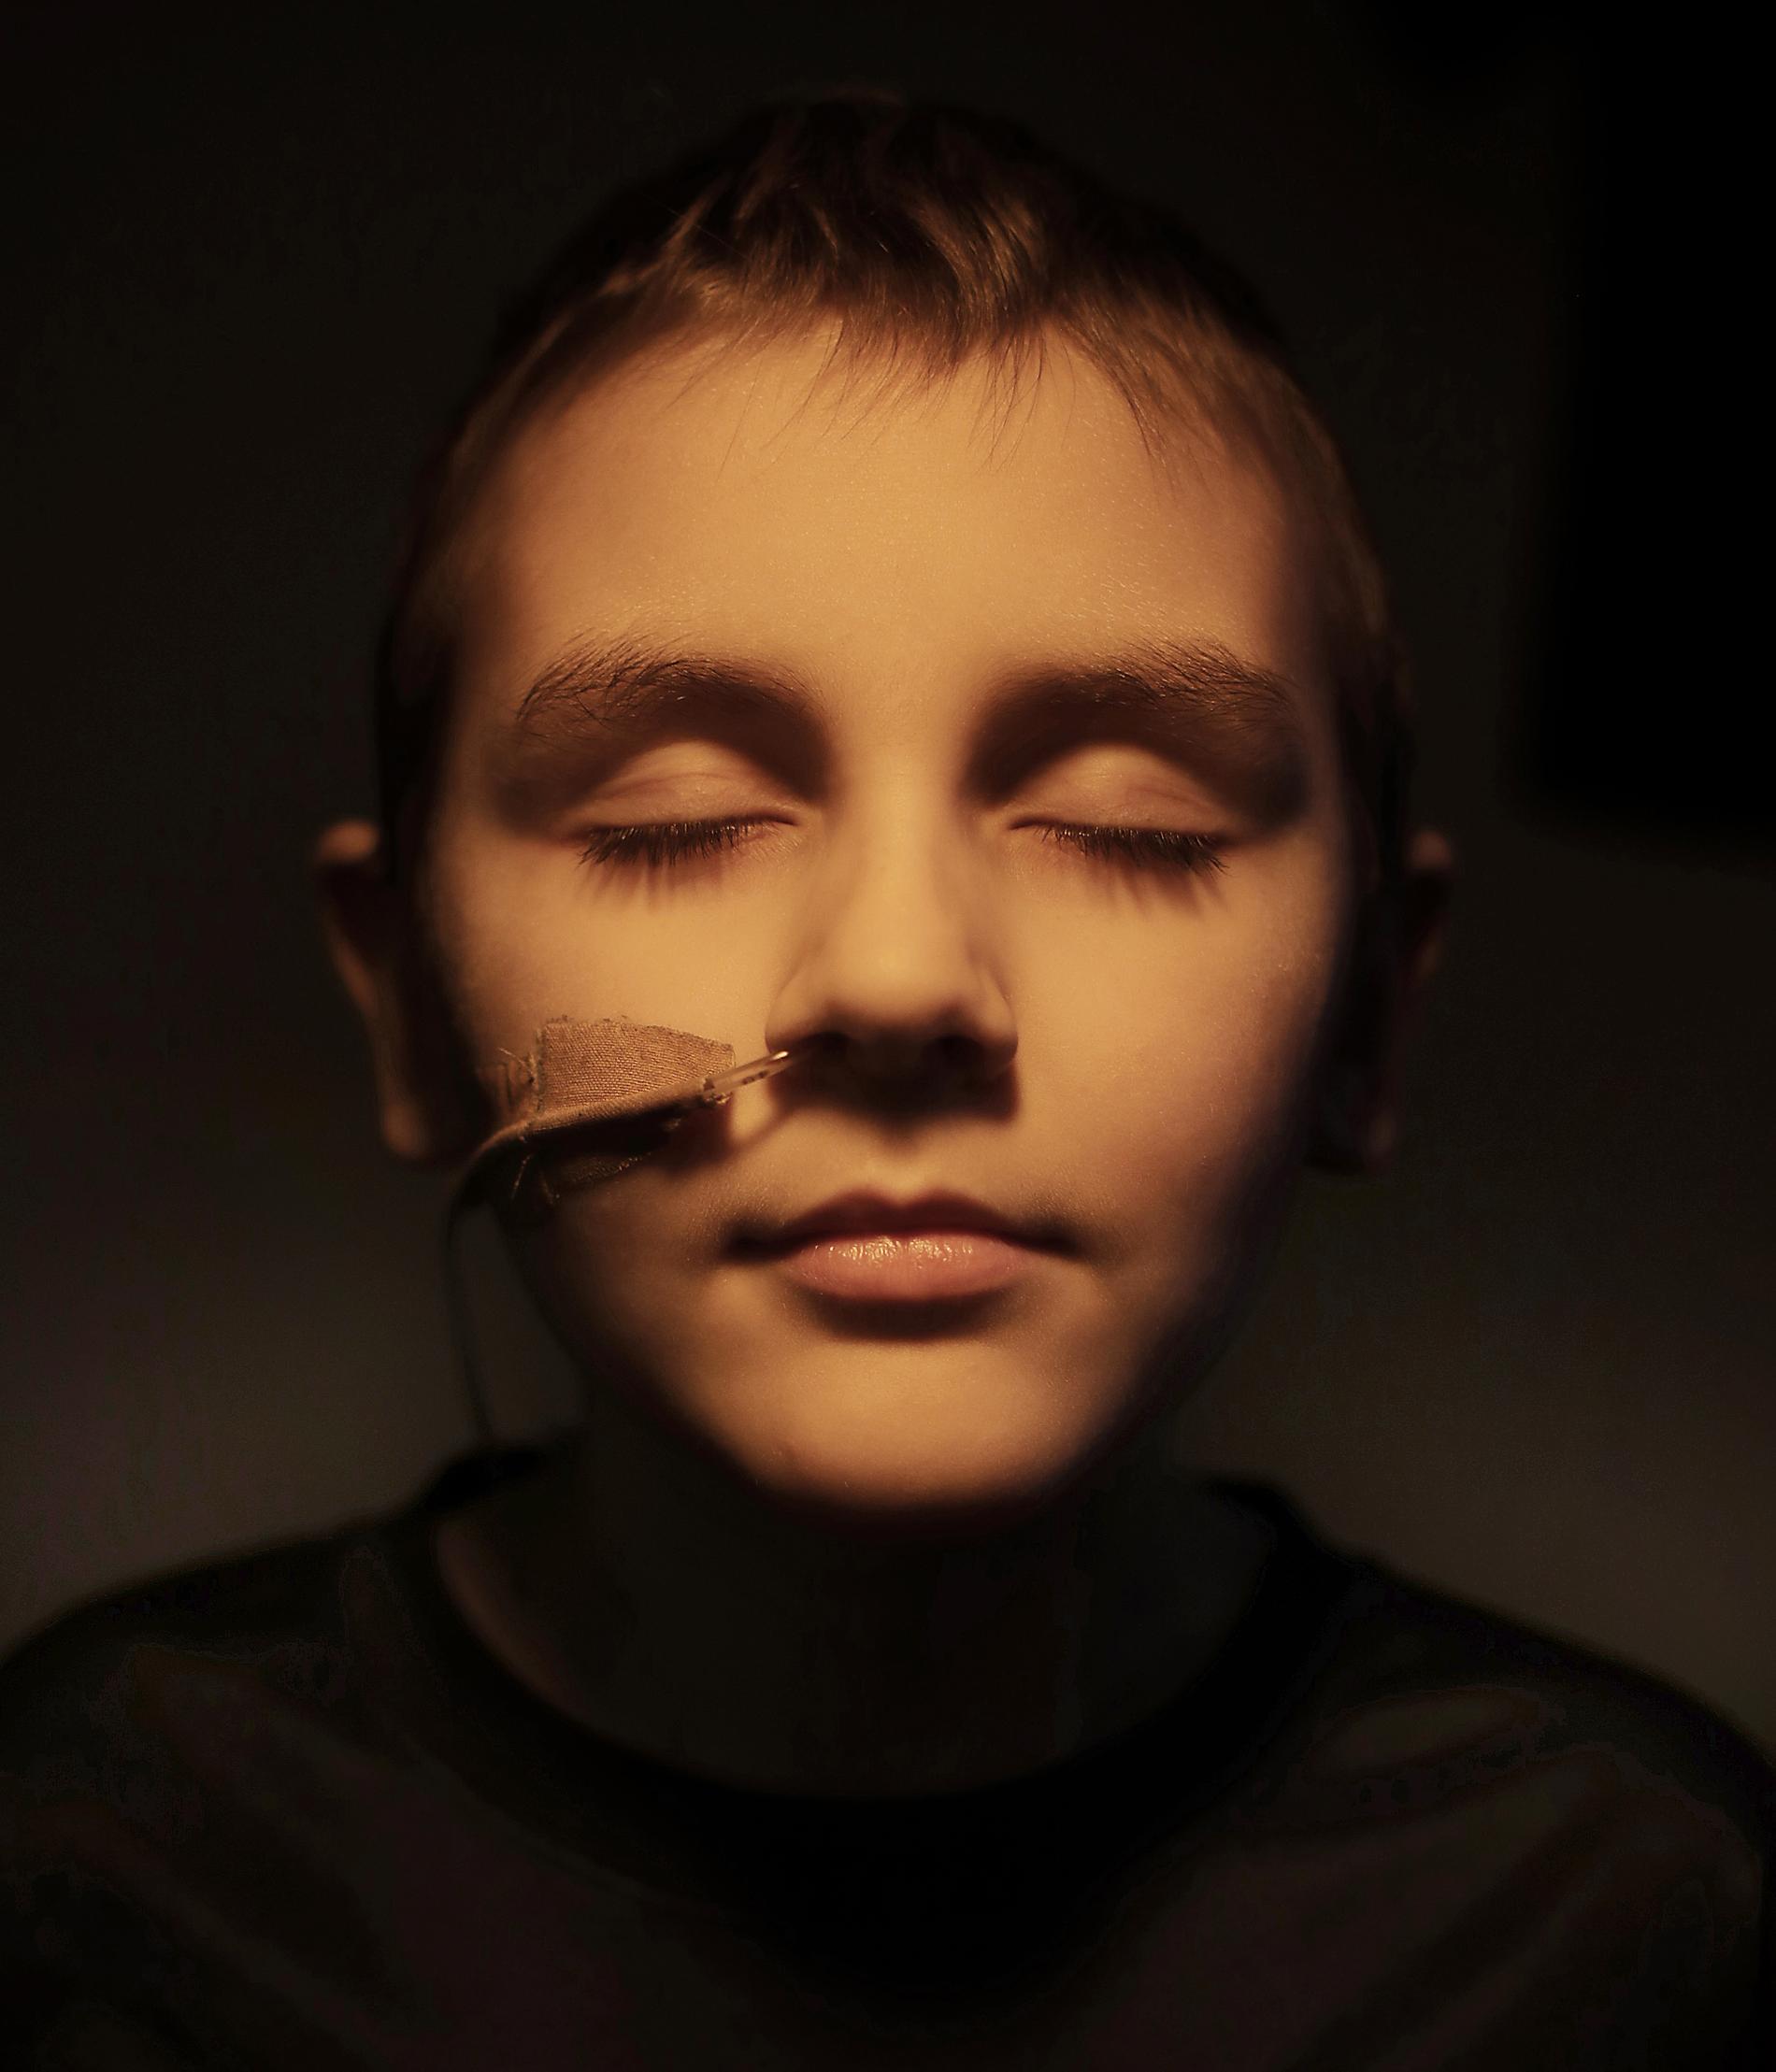 Årets Porträttserie: Hampus Lisell Monthan, 10. MDS, myeloplastiskt syndrom. Hampus var bara 4,5 år när han blev sjuk i cancer första gången. Läkarna konstaterade leukemi. Efter mer än två års behandling skulle han vara helt återställd men trots det var blev han sjuk väldigt ofta. På sin åttaårsdag fick han veta att cancern var tillbaka, nu som benmärgssjukdomen MDS.